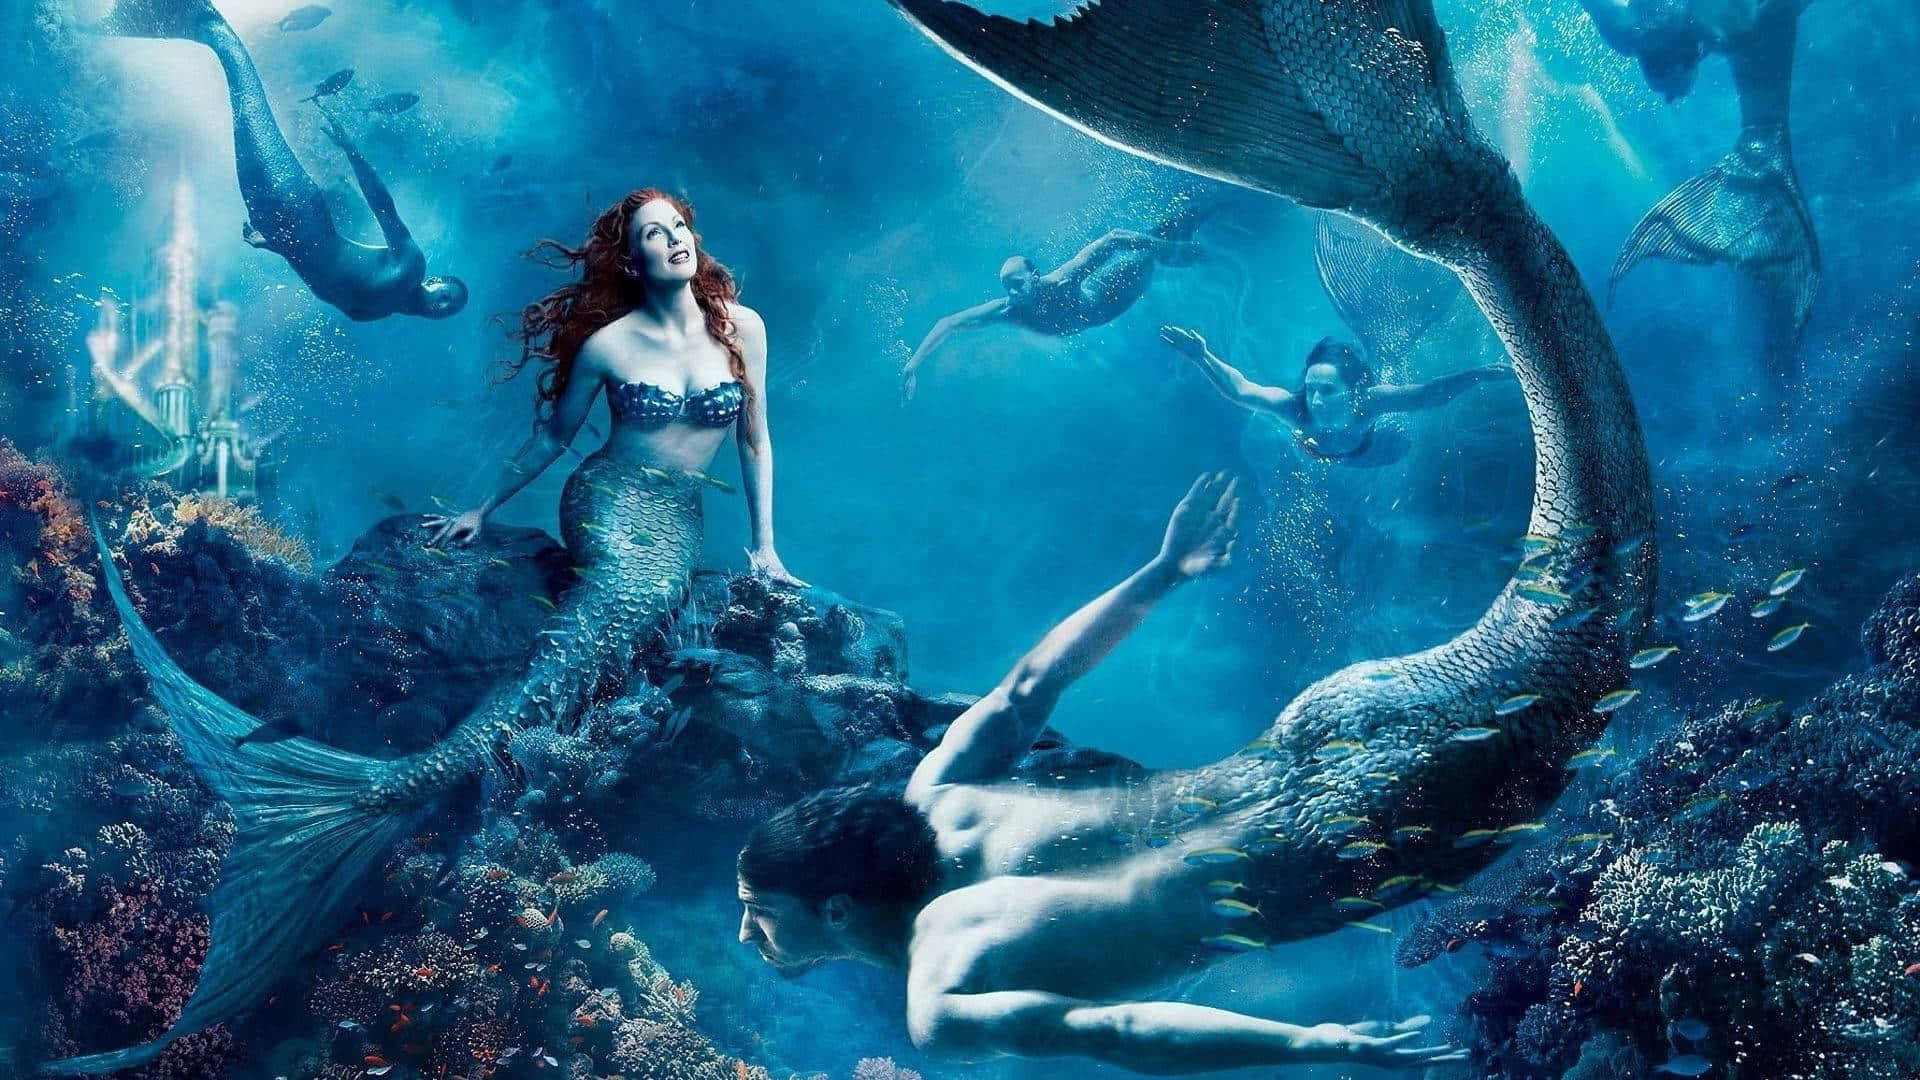 Julianne Moore And Michael Phelps As Mermaids Wallpaper